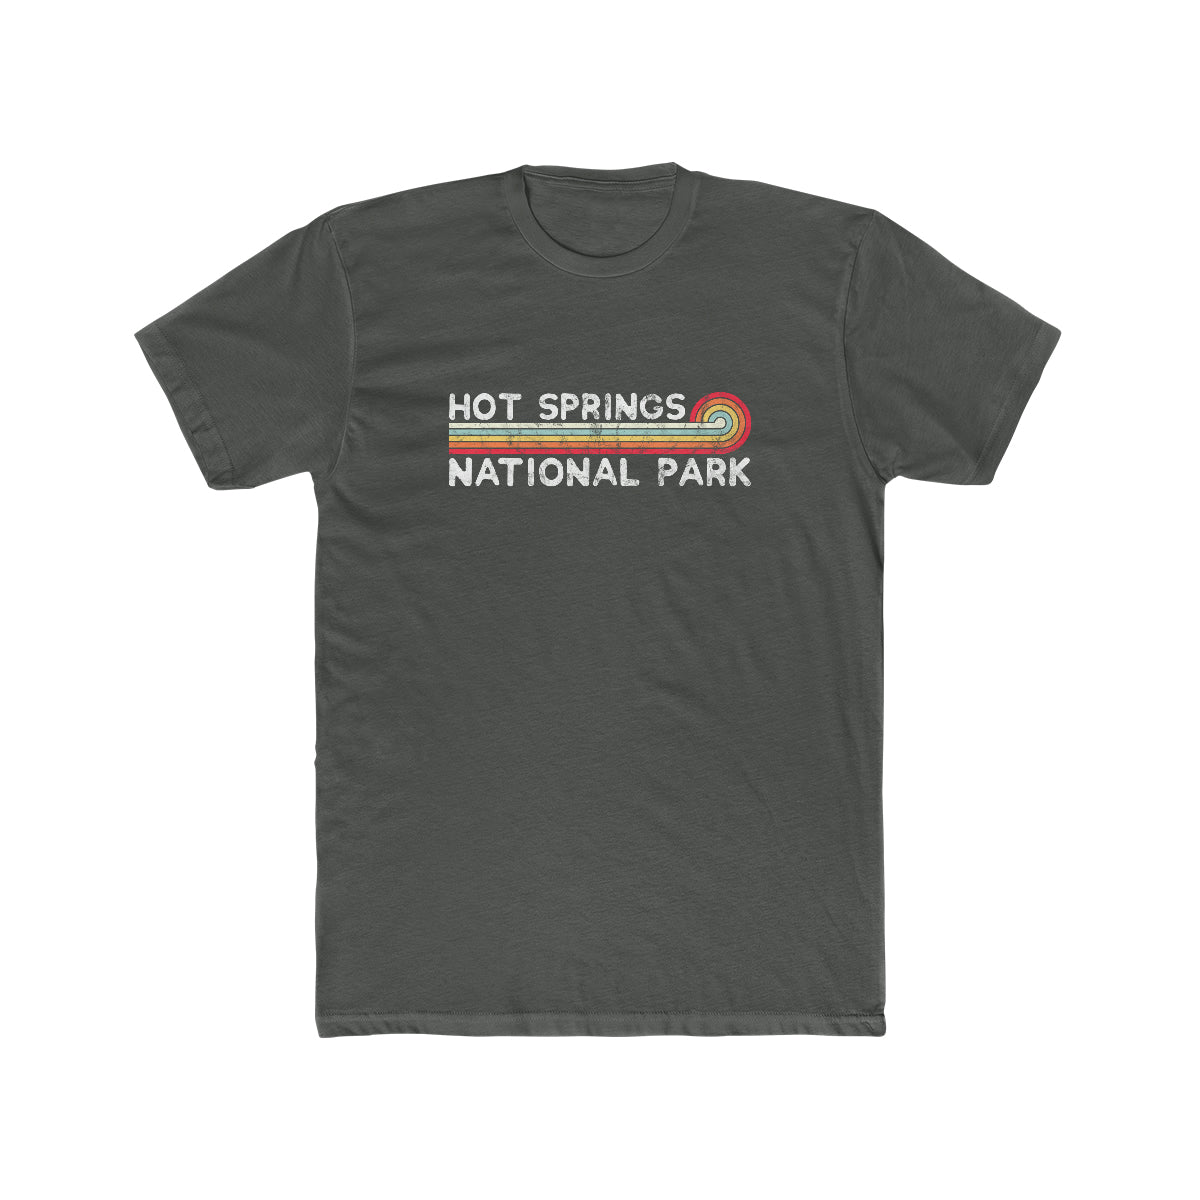 Hot Springs National Park T-Shirt - Vintage Stretched Sunrise